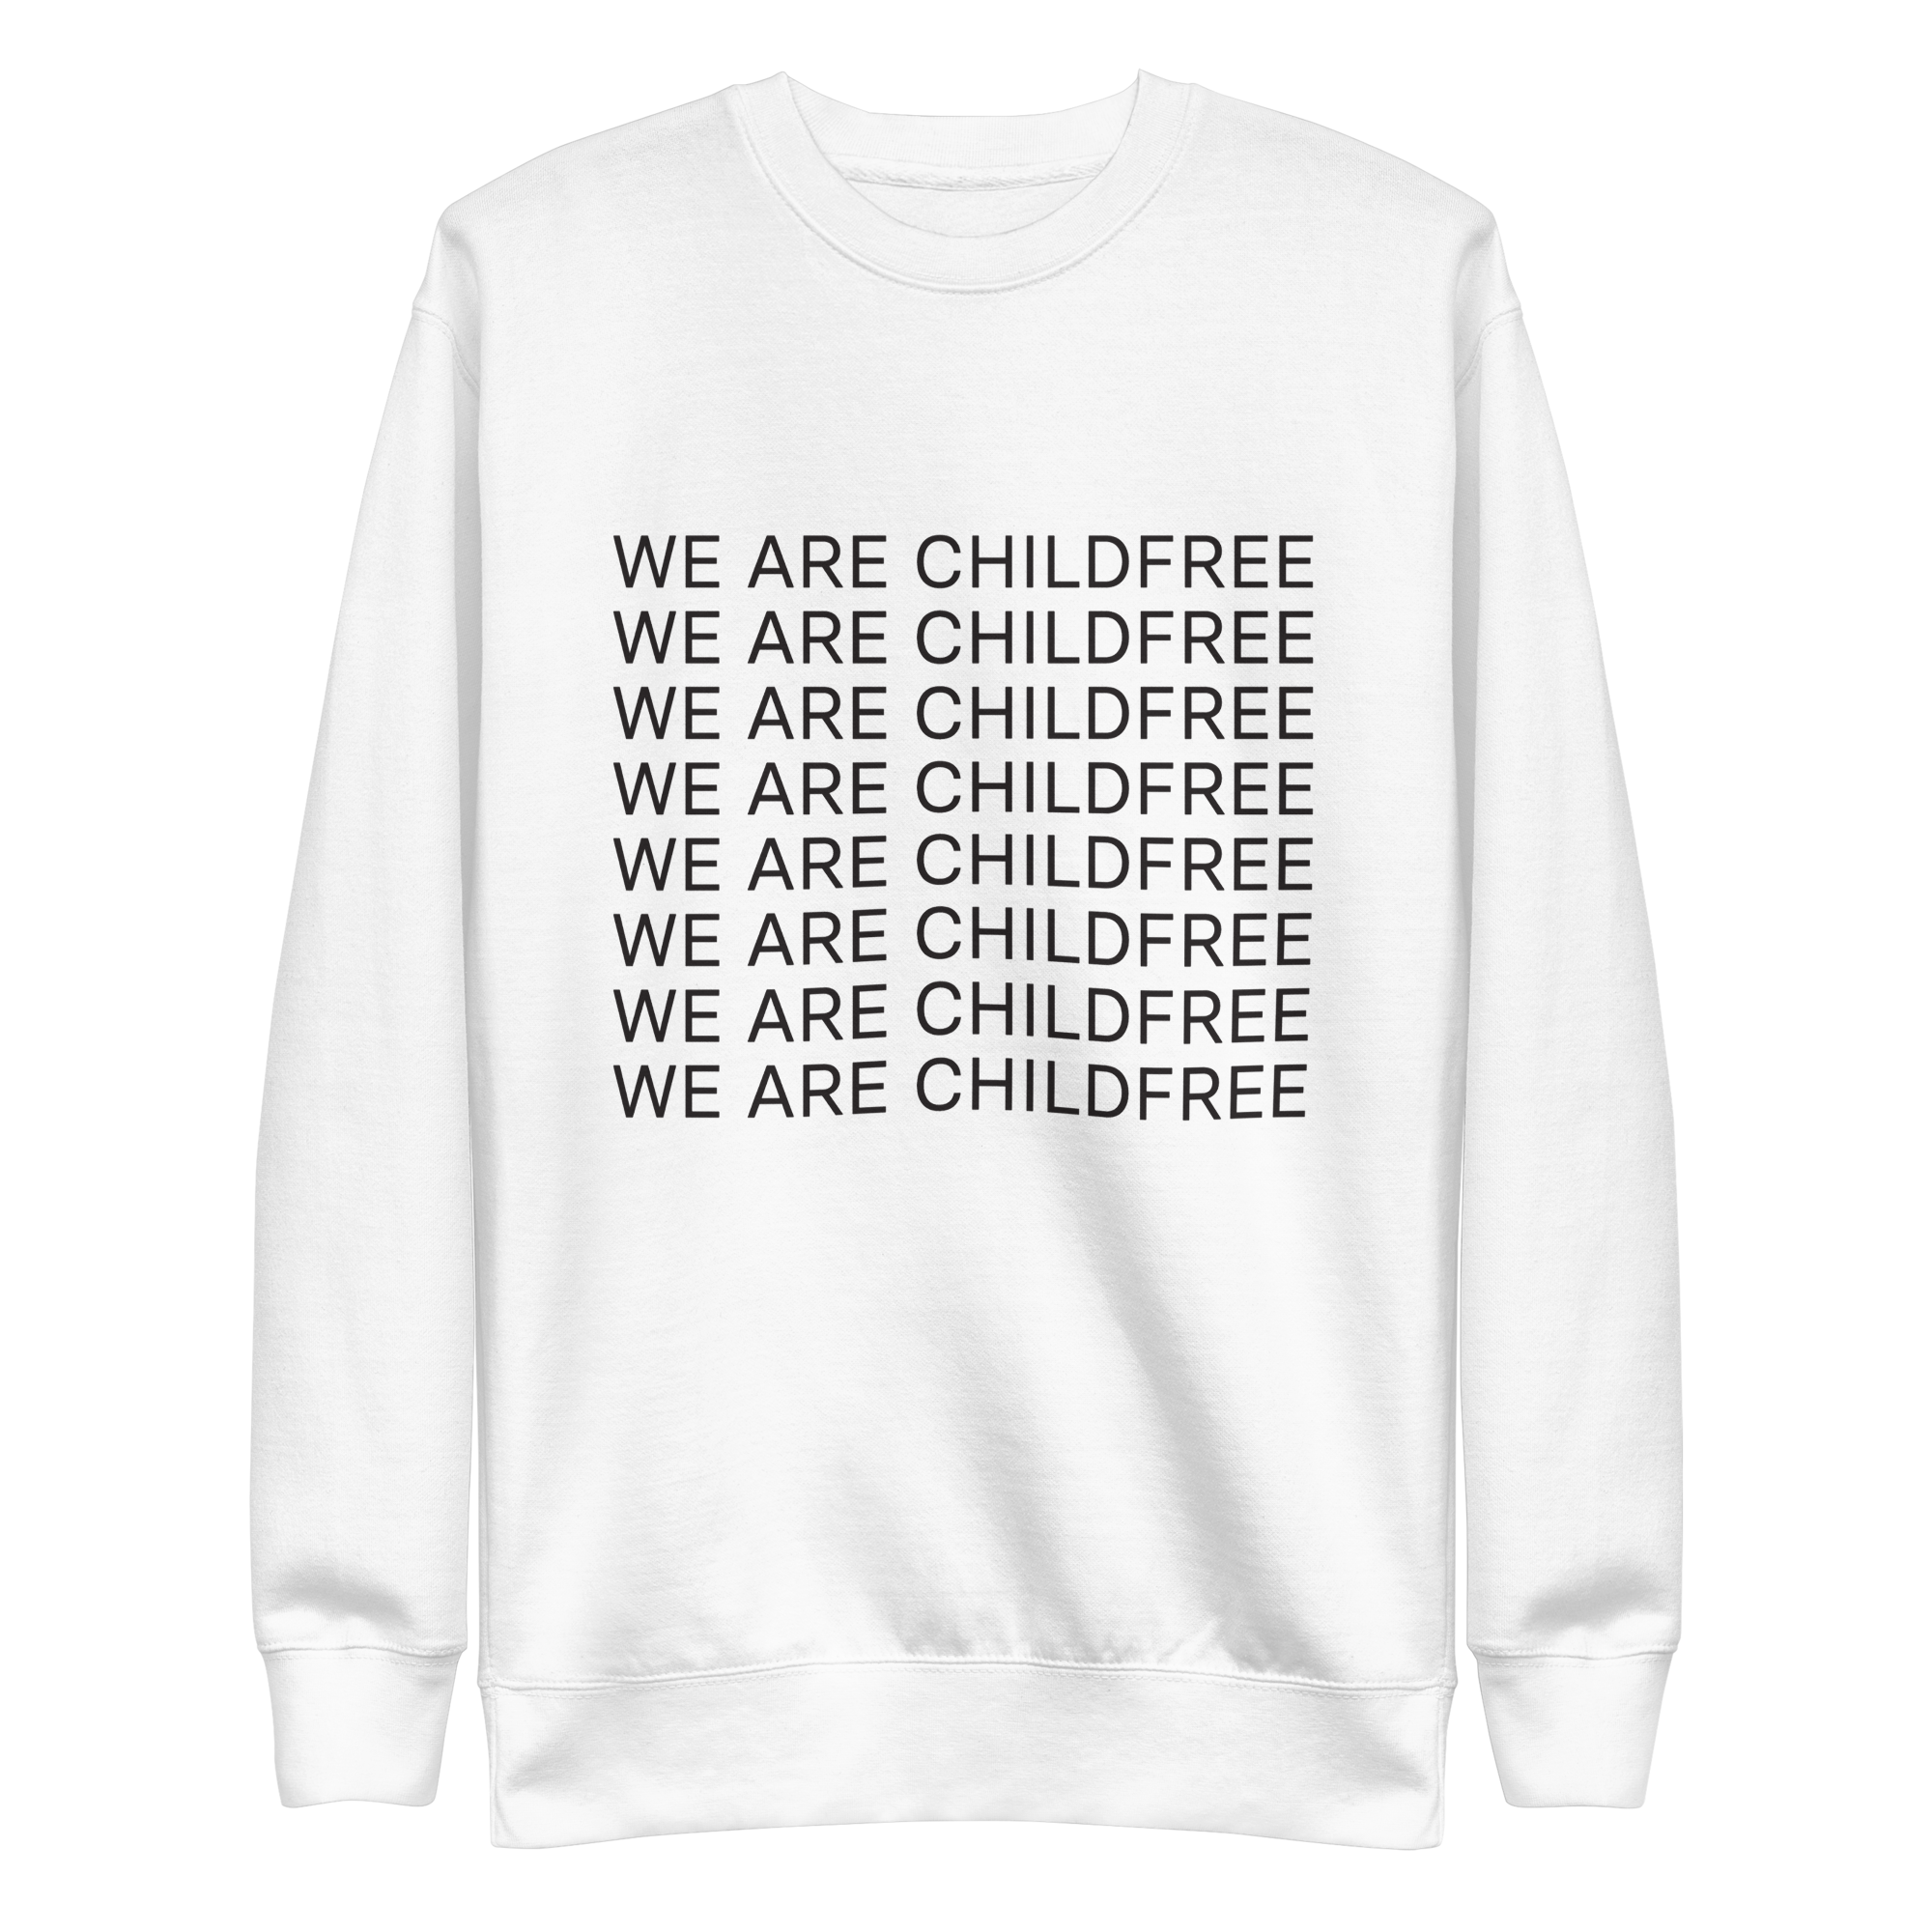 We are Childfree all gender sweatshirt white